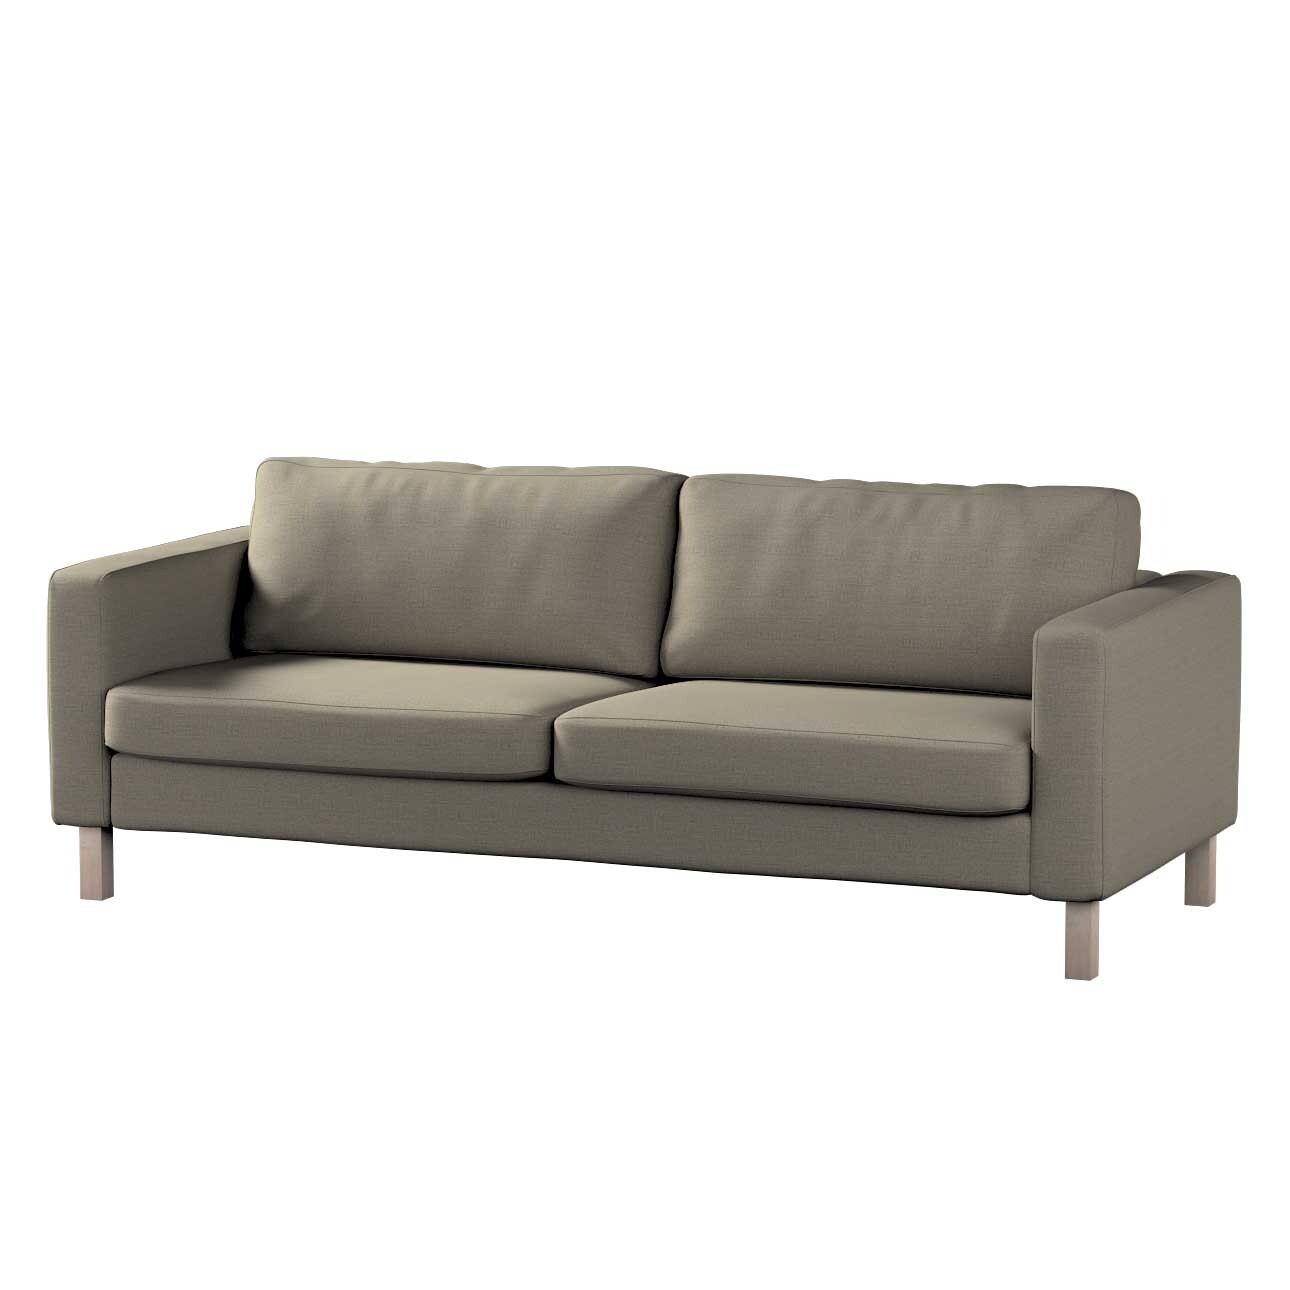 Bezug für Karlstad 3-Sitzer Sofa nicht ausklappbar, kurz, beige-grau, Bezug günstig online kaufen